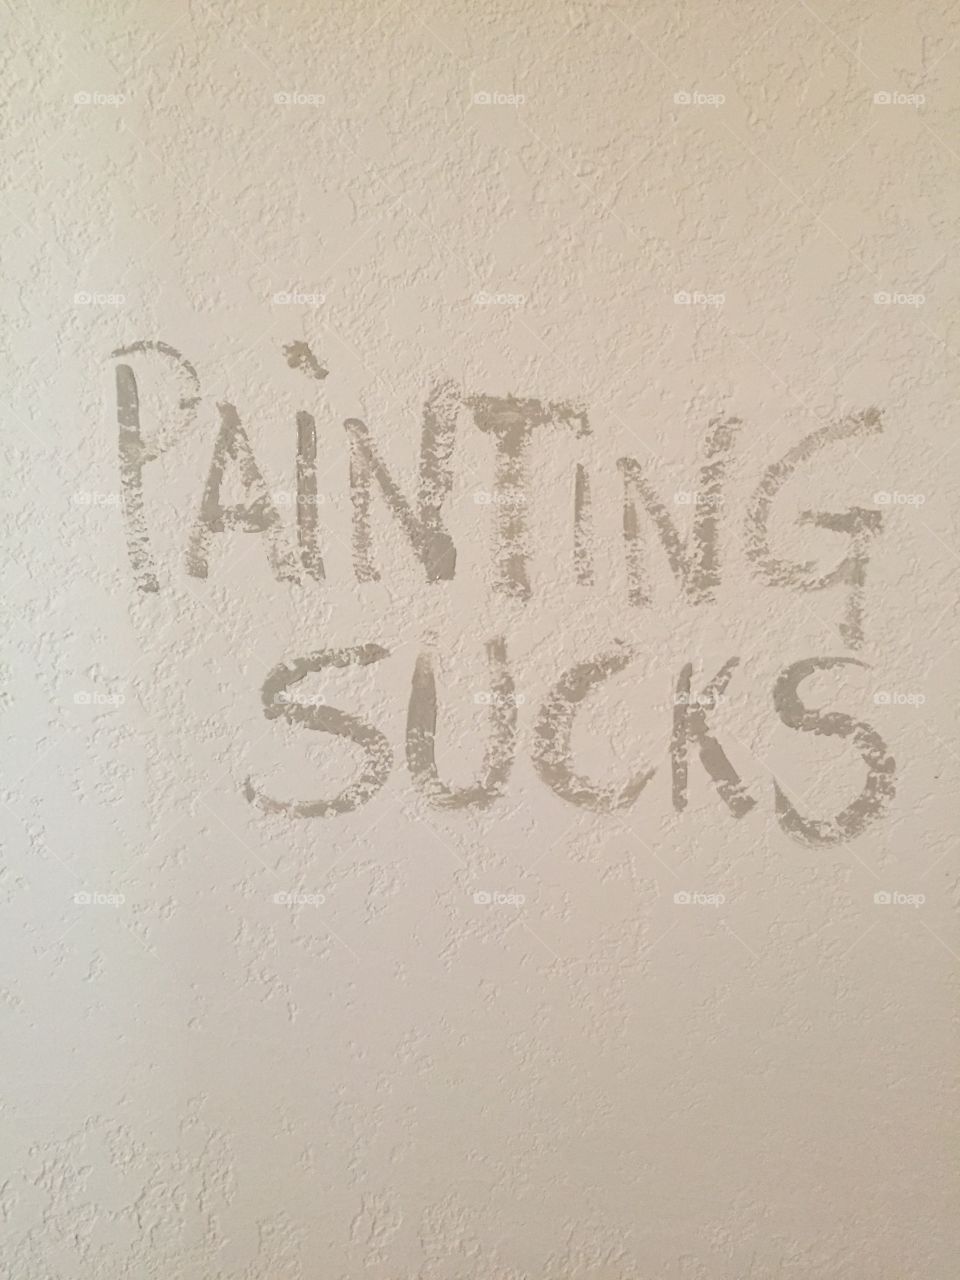 Painting sucks